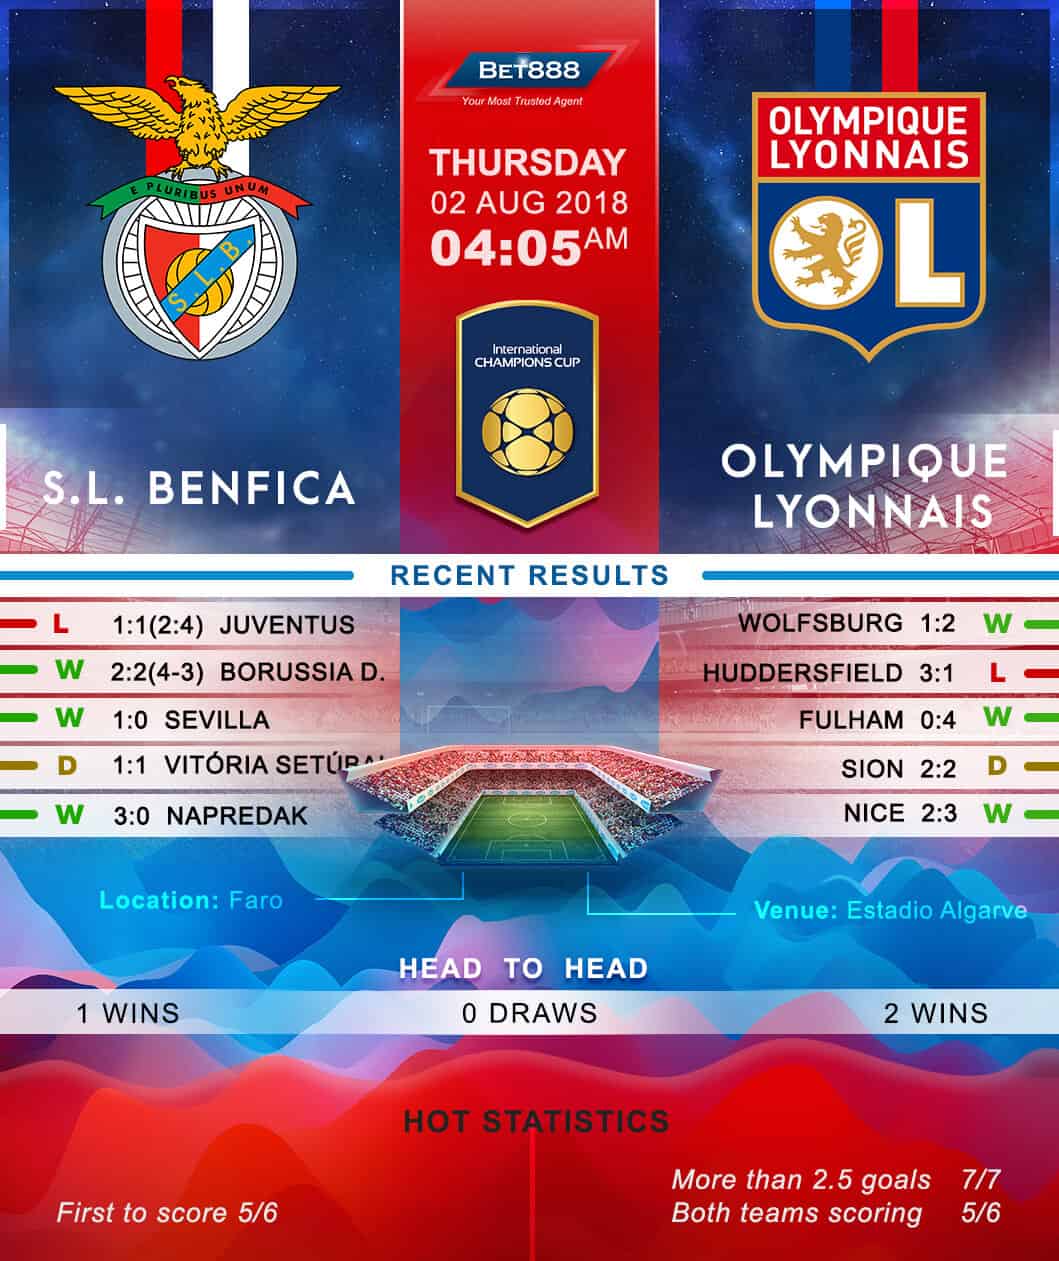 Benfica vs Olympique Lyonnais 02/08/18